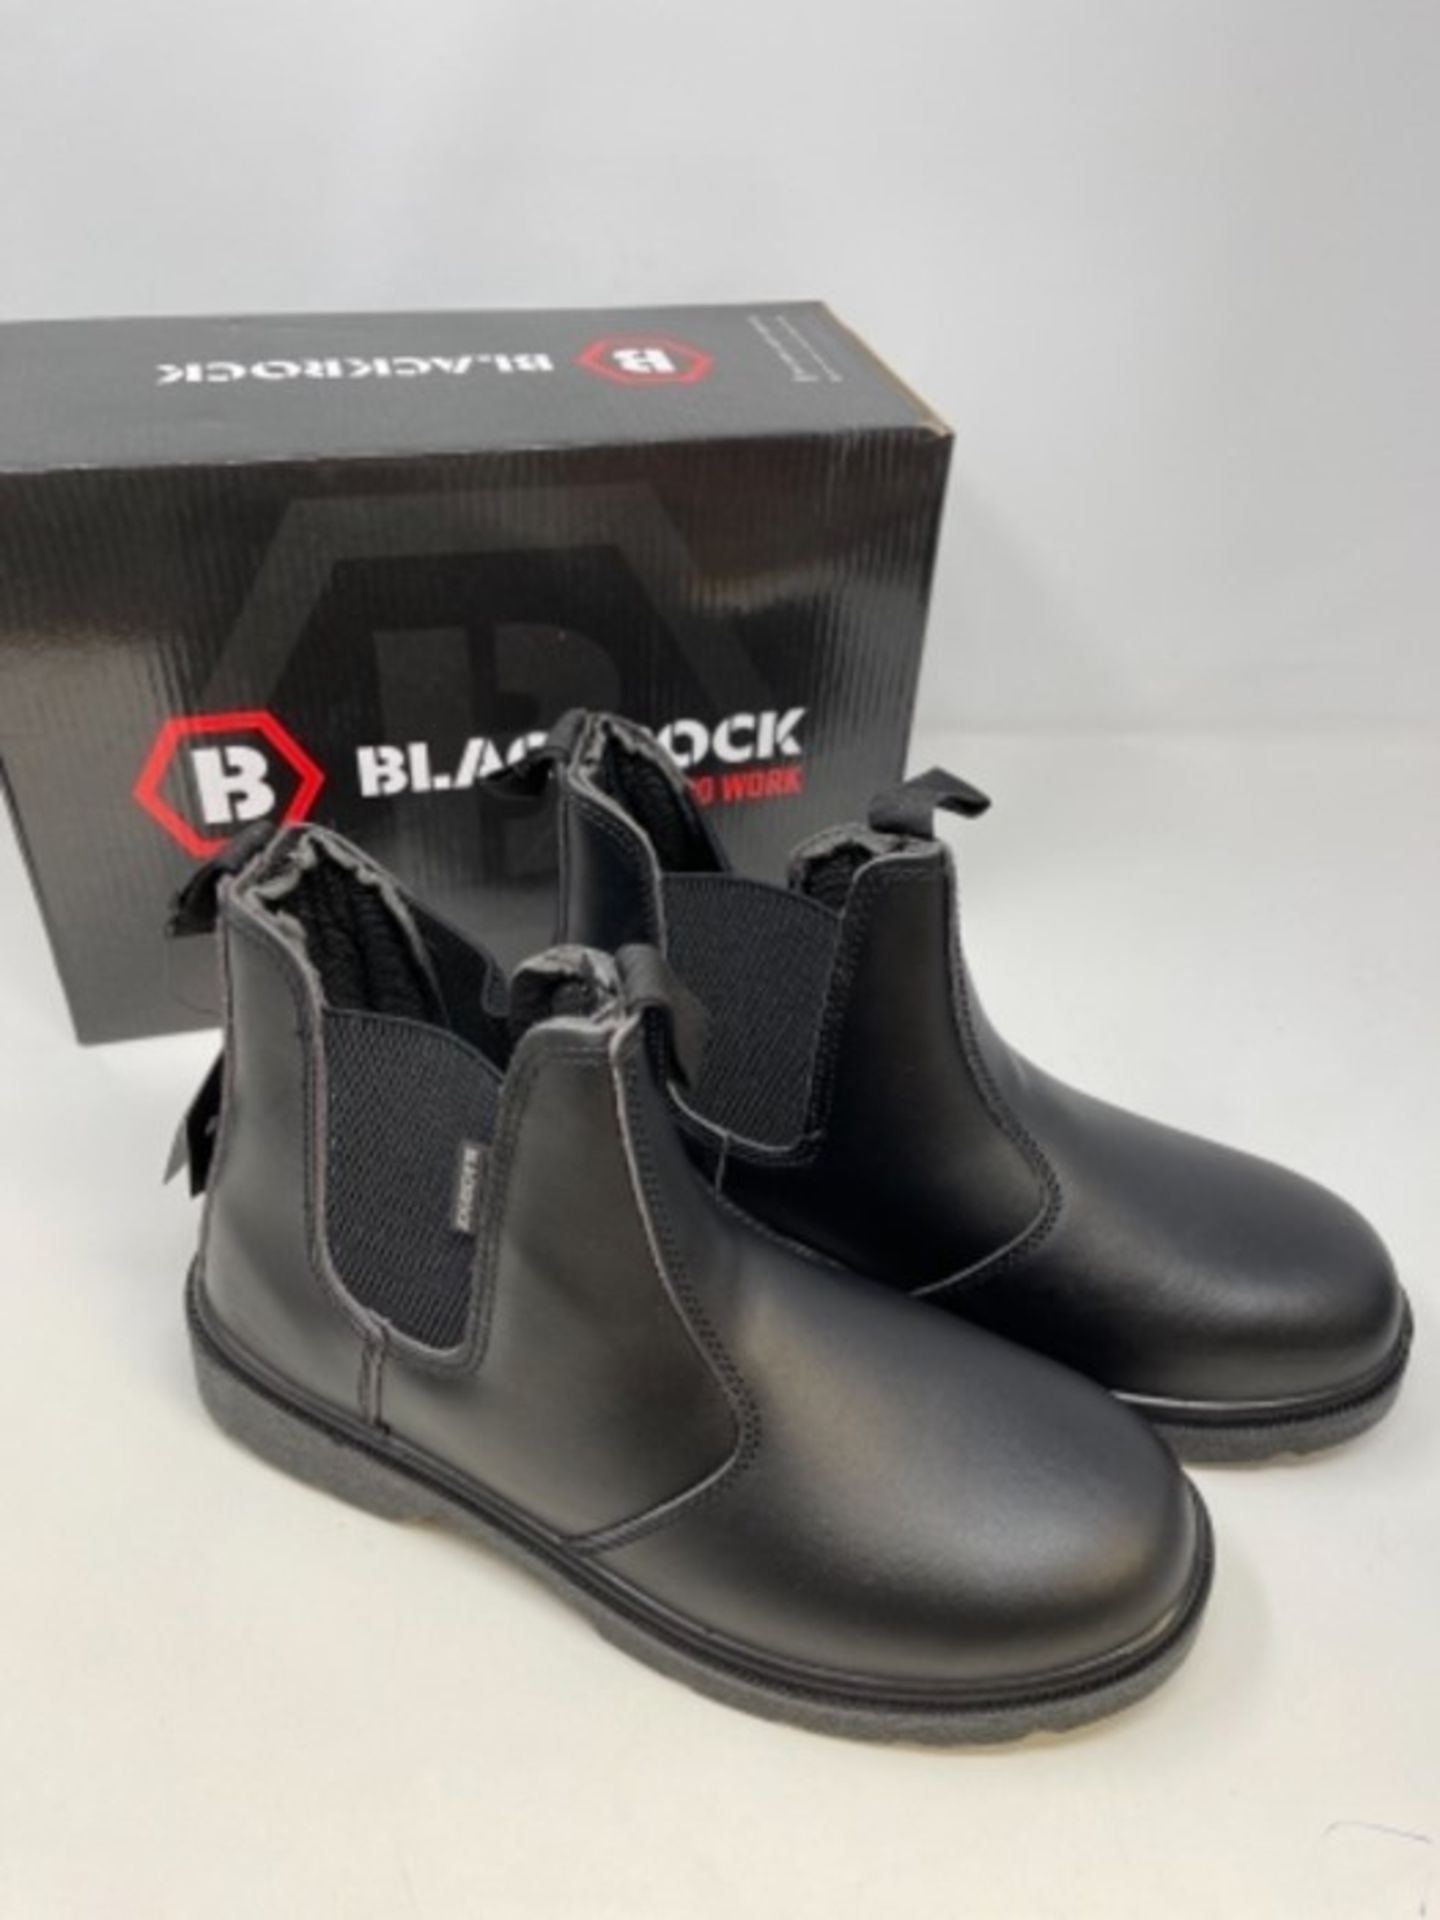 B�l�a�c�k�r�o�c�k� �S�F�1�2�B� �D�e�a�l�e�r� �S�a�f�e�t�y� �B�o�o�t� �(�B�l�a�c�k�)� �,� �S�i�z�e� � - Image 2 of 2